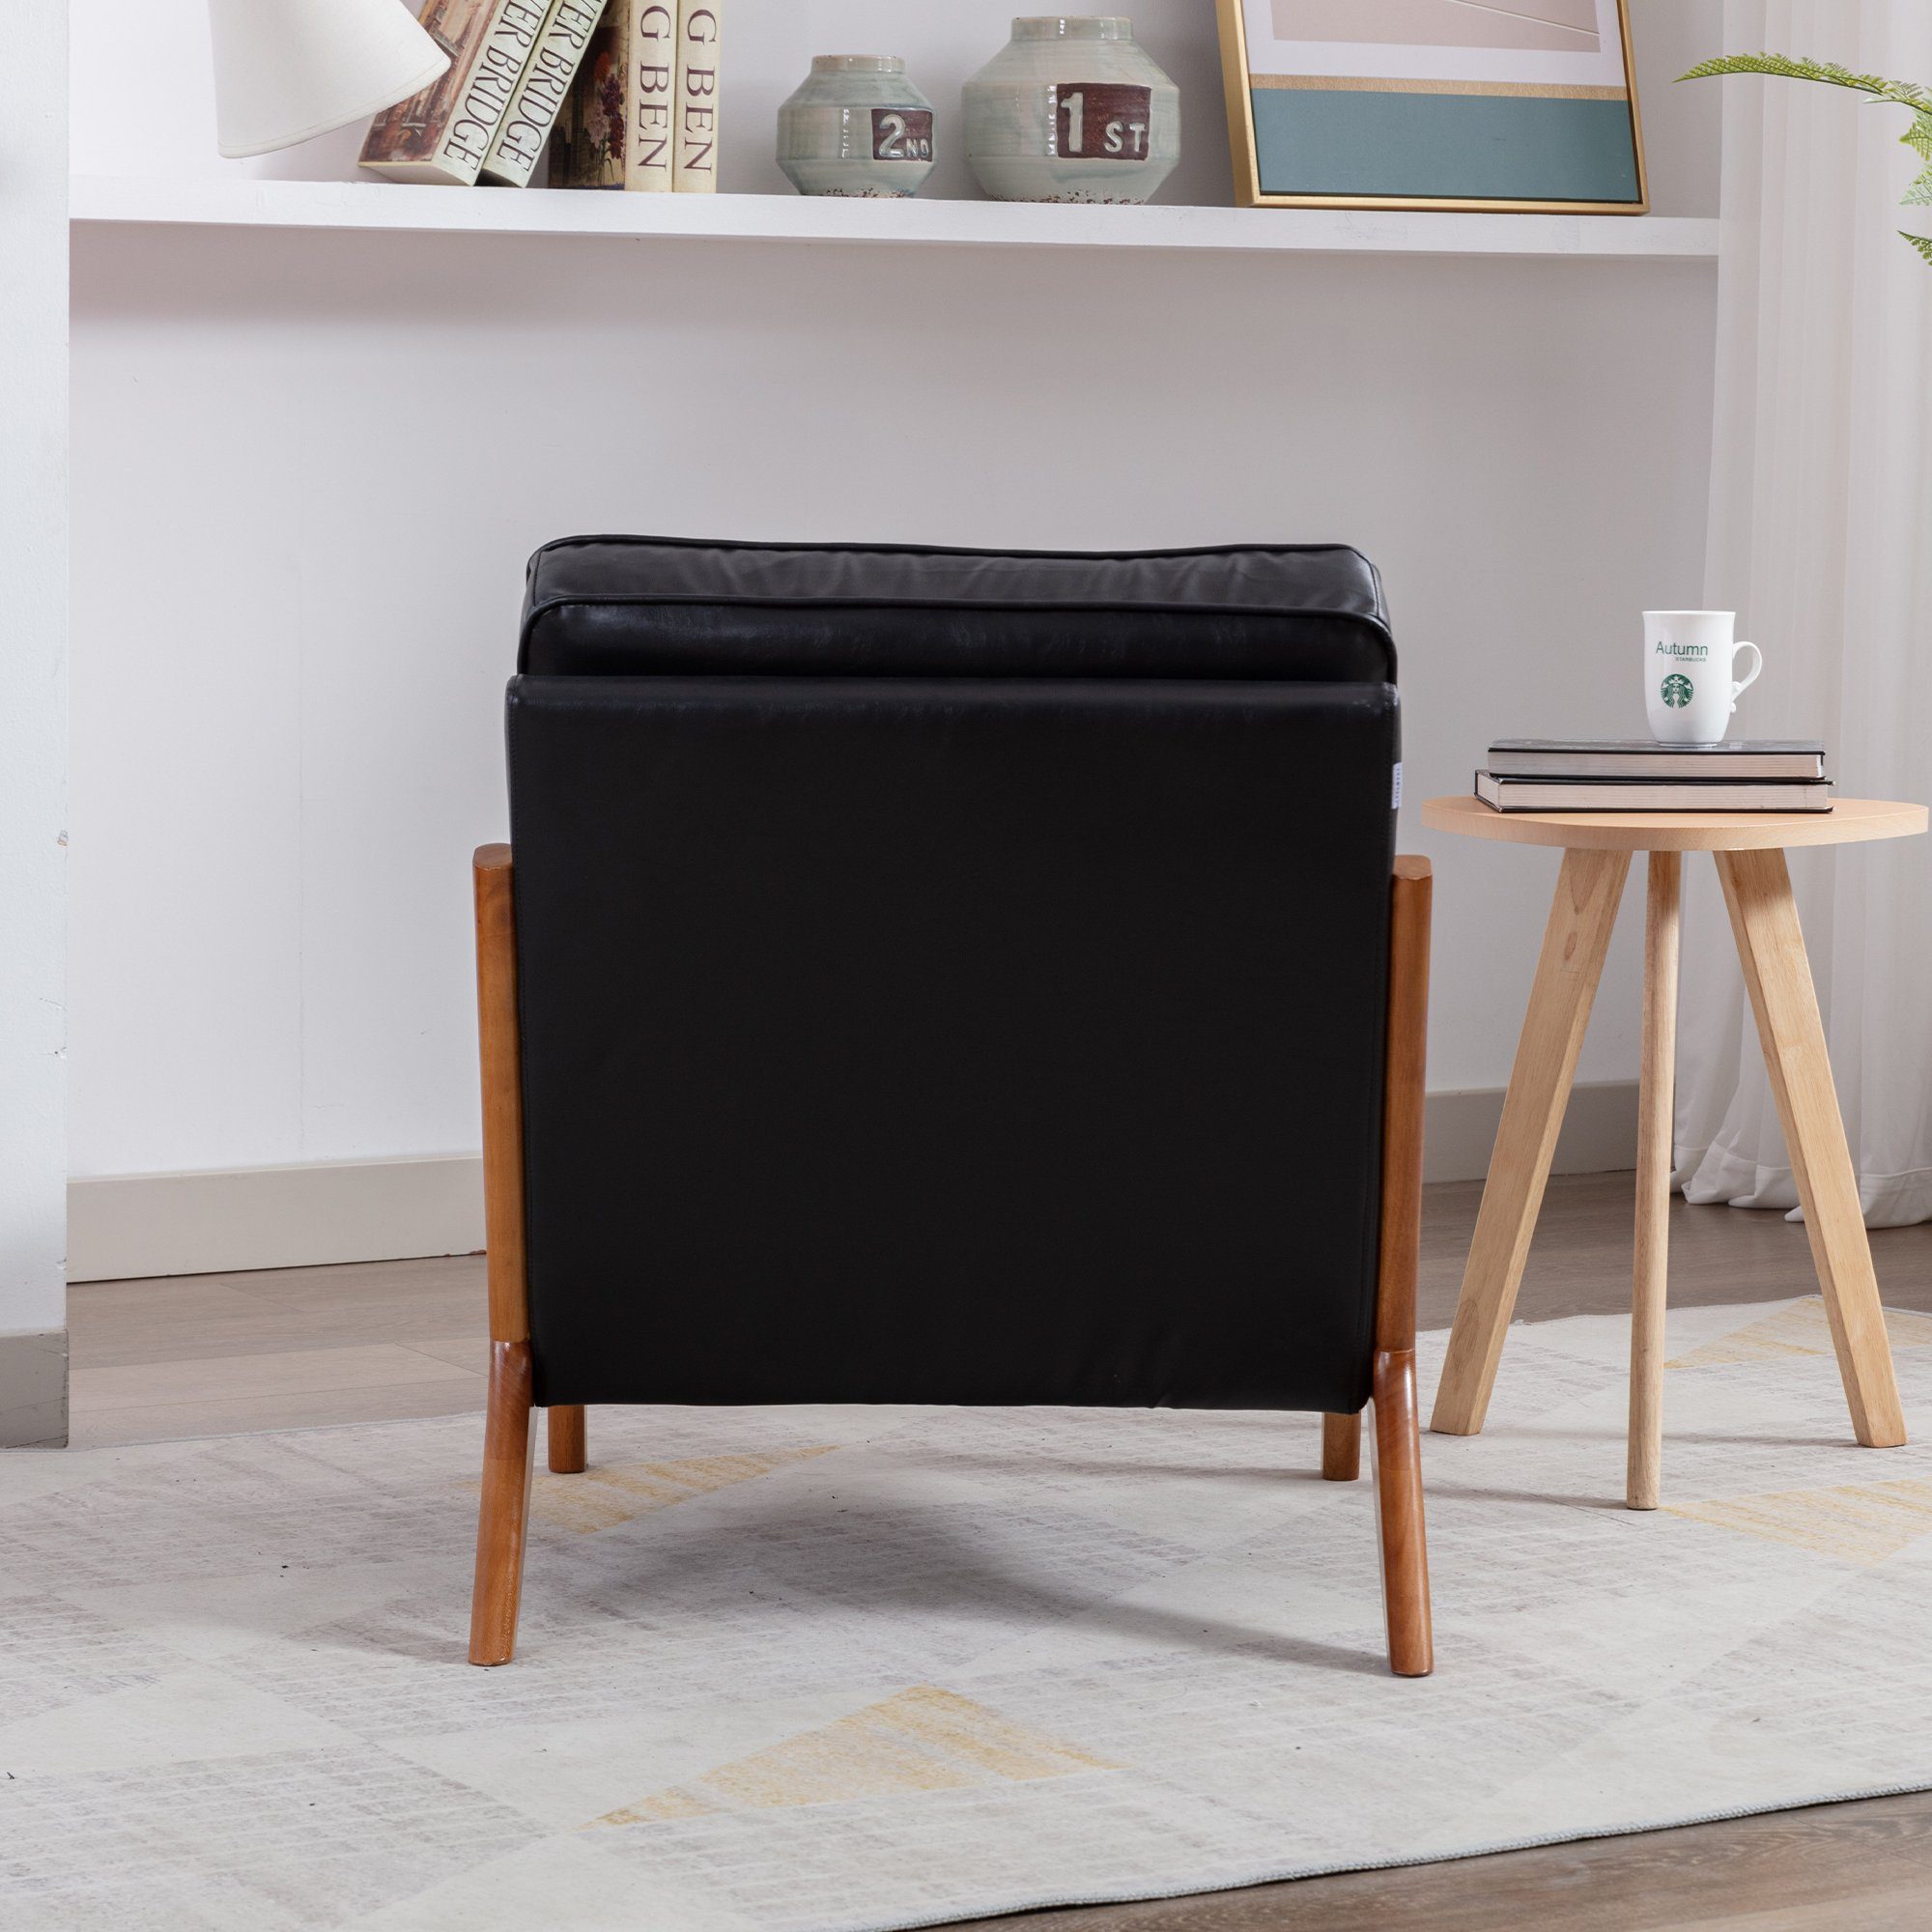 PU stoff Fernsehsessel (Stuhlbein Loungesessel besteht Sessel schwarz aus Gummiholz), Freizeitstuhl Leder Relaxsessel Polsterstuhl OKWISH